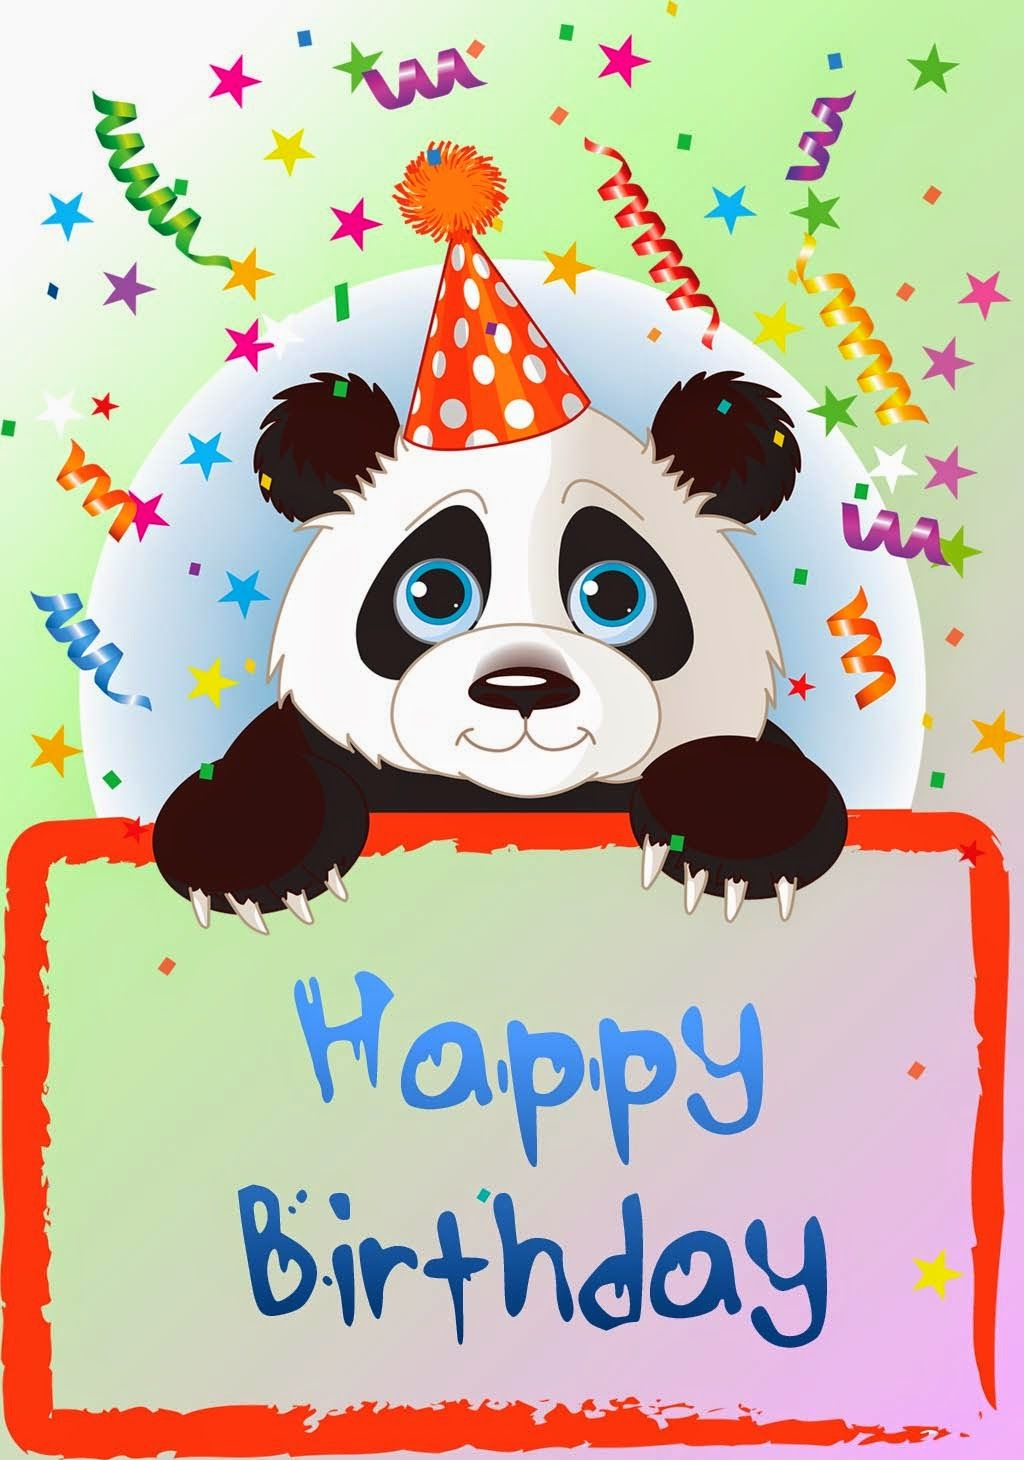 Panda Birthday Cards Printable Free Free Printable Card